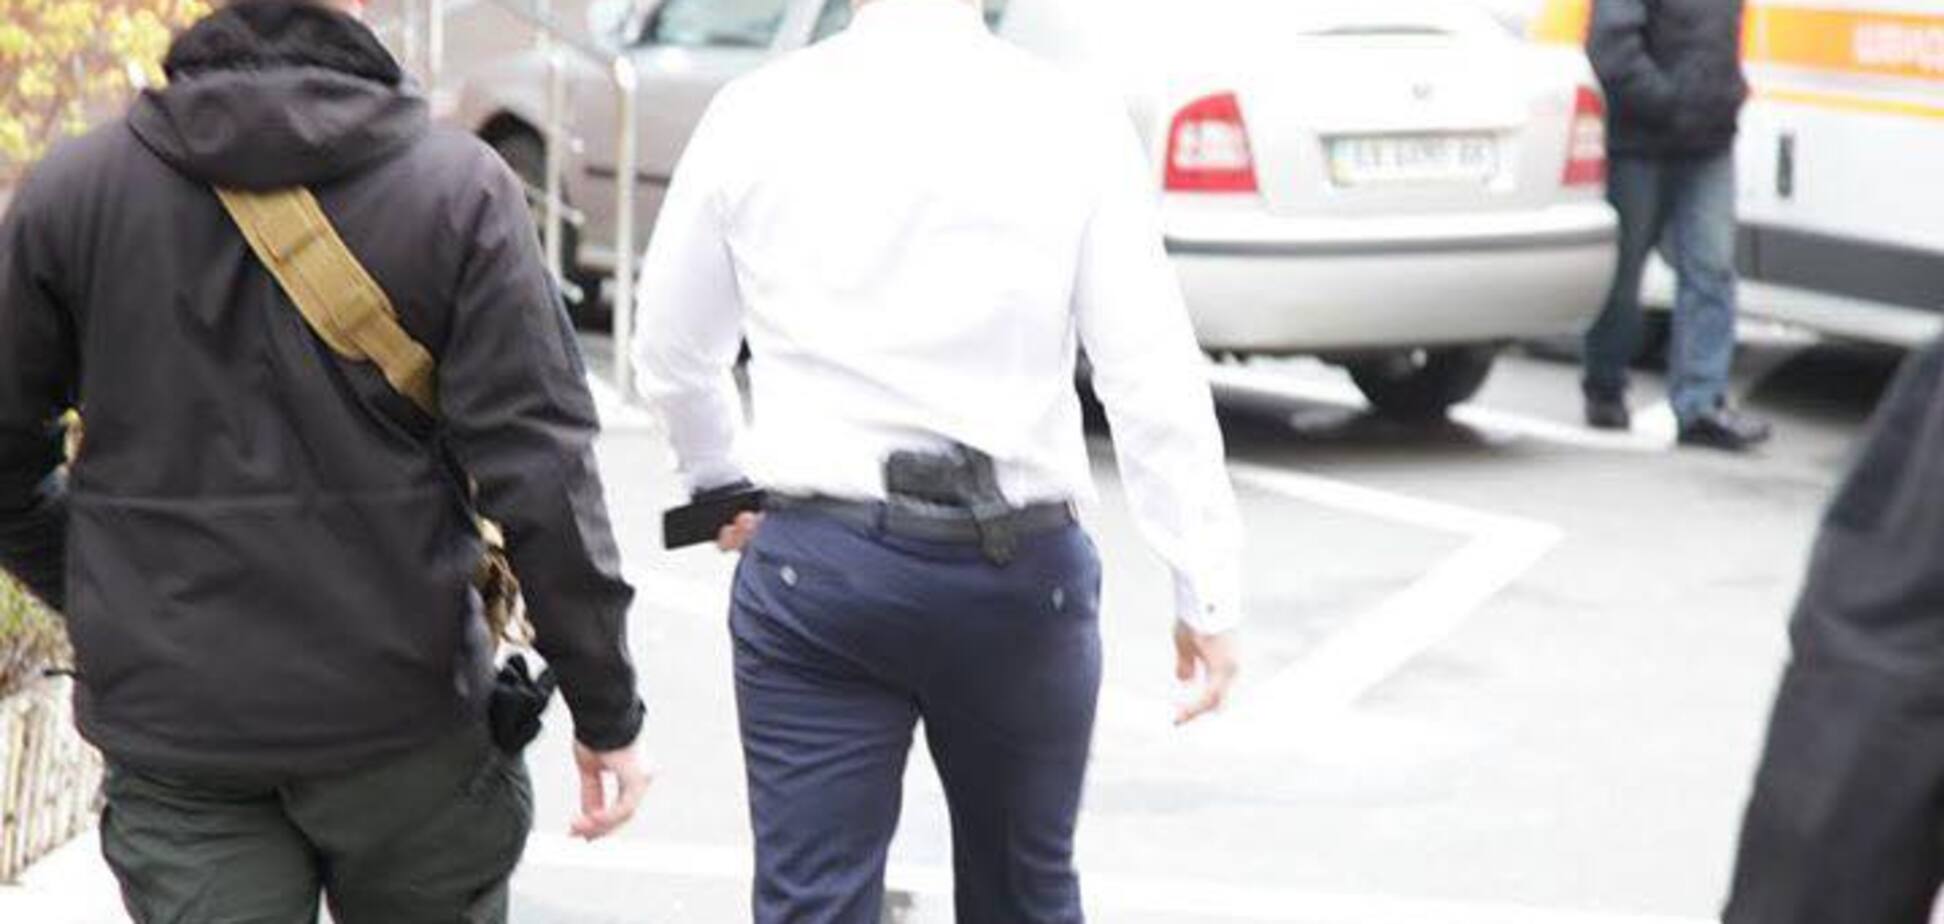 Ківа влаштував блогеру скандал через своє фото з пістолетом: фрагменти листування